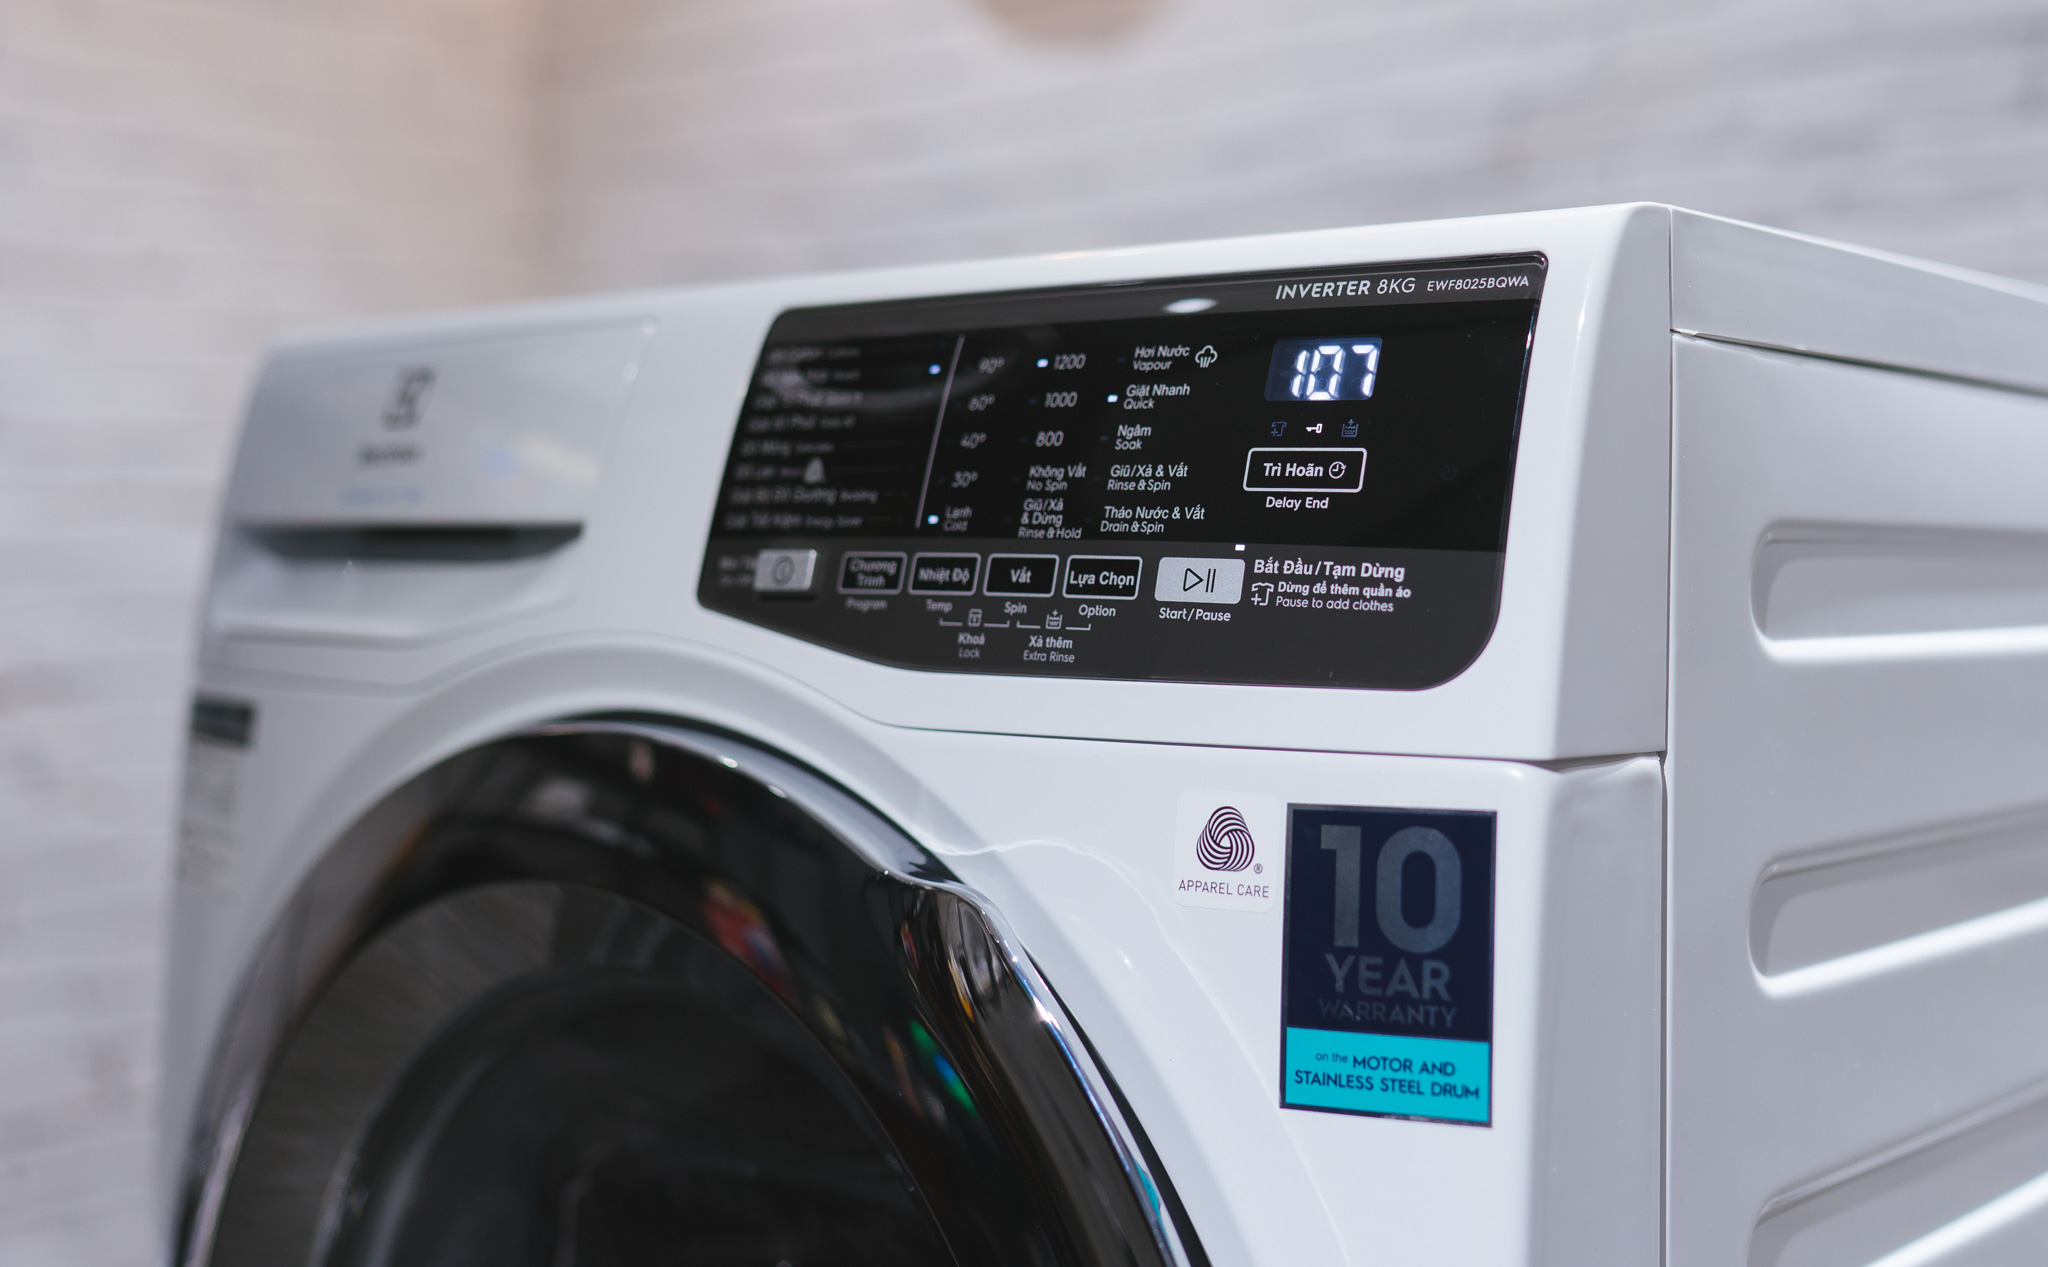 Trên tay Electrolux UltimateCare 500: Máy giặt với công nghệ hơi nước bảo vệ quần áo